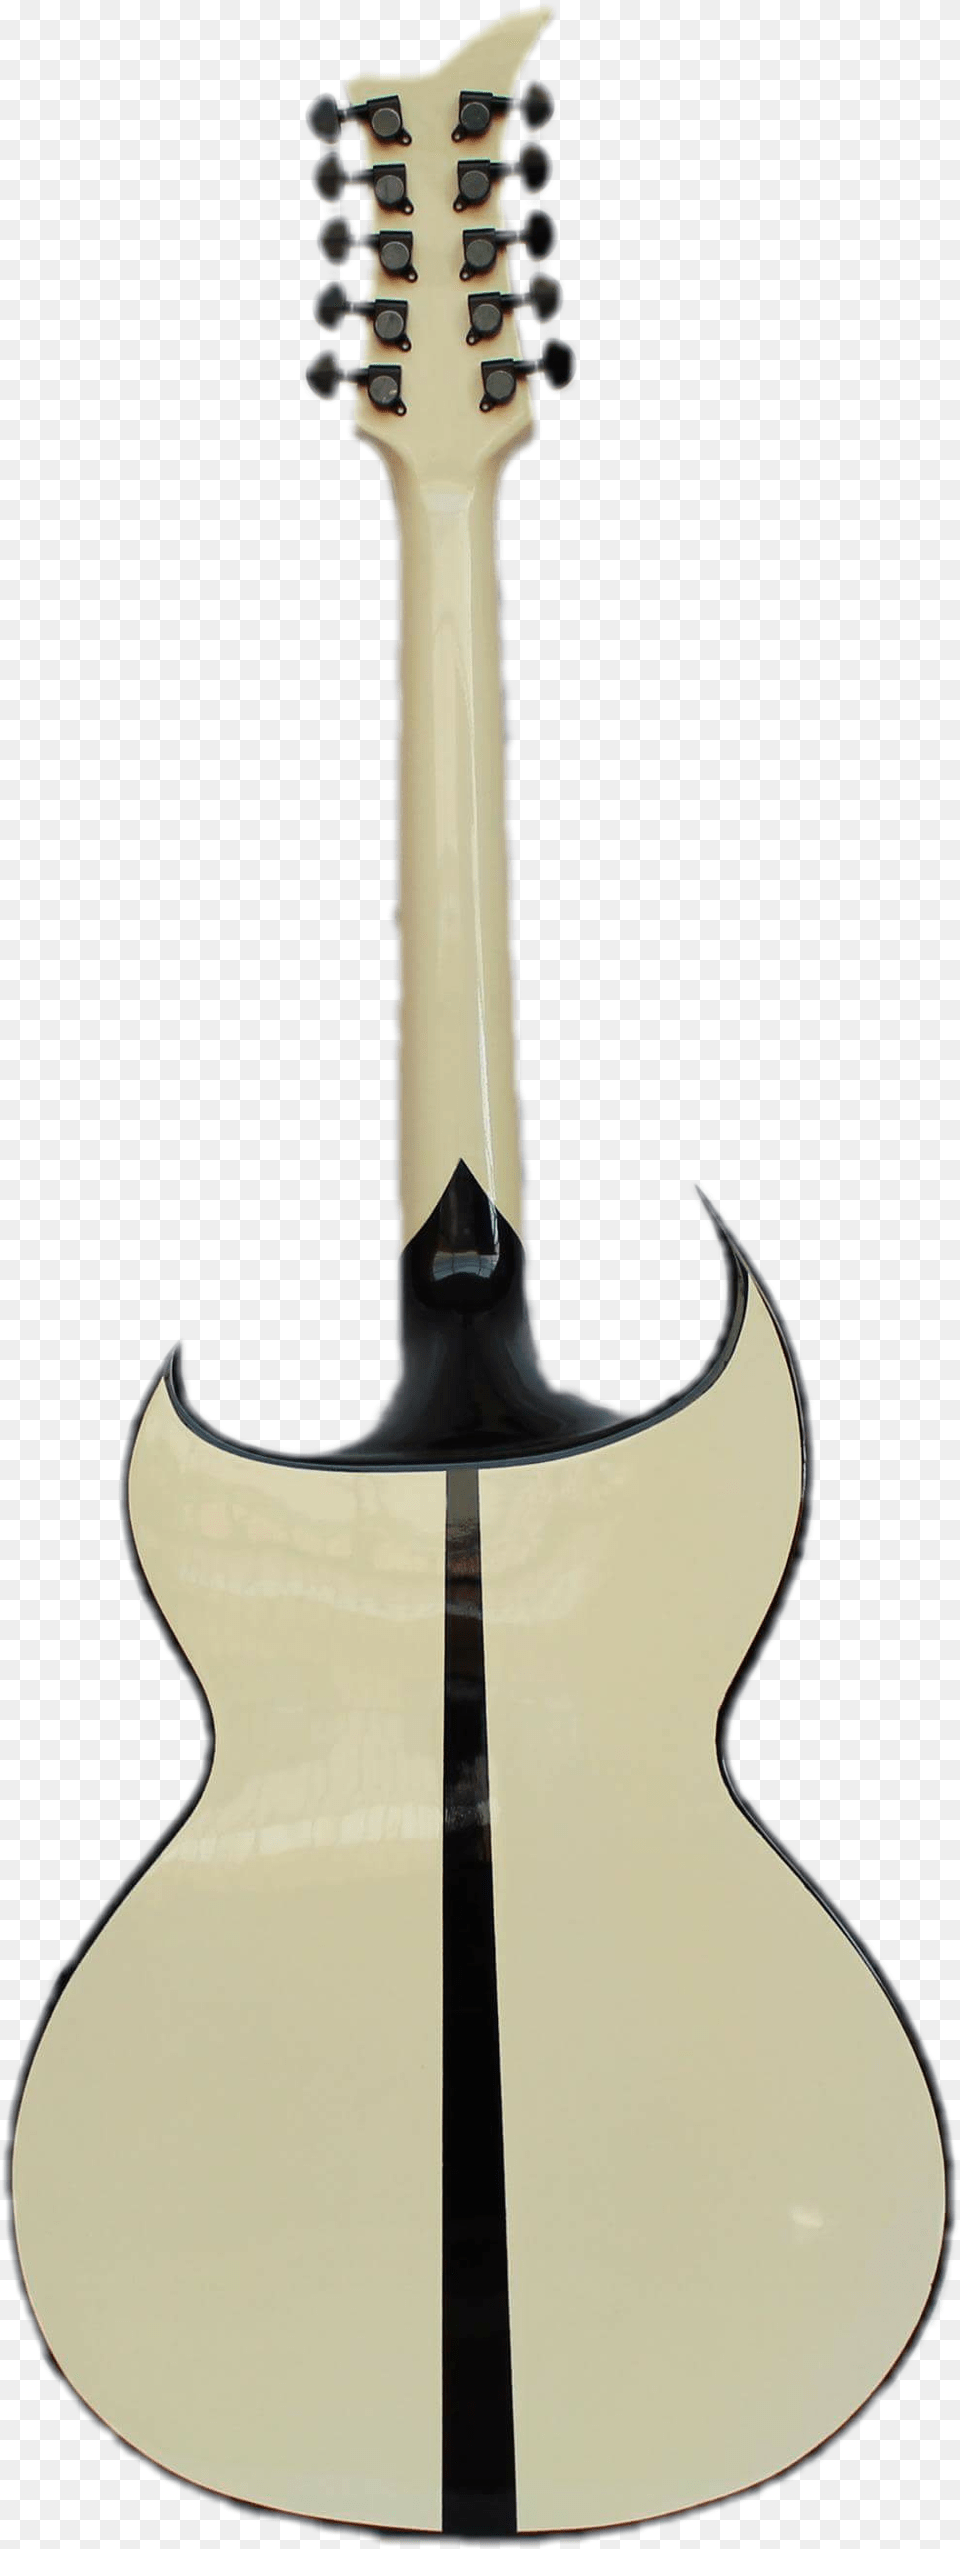 Bajo Quinto De Caoba Tacn Vaciado Guitar, Musical Instrument, Sword, Weapon Png Image